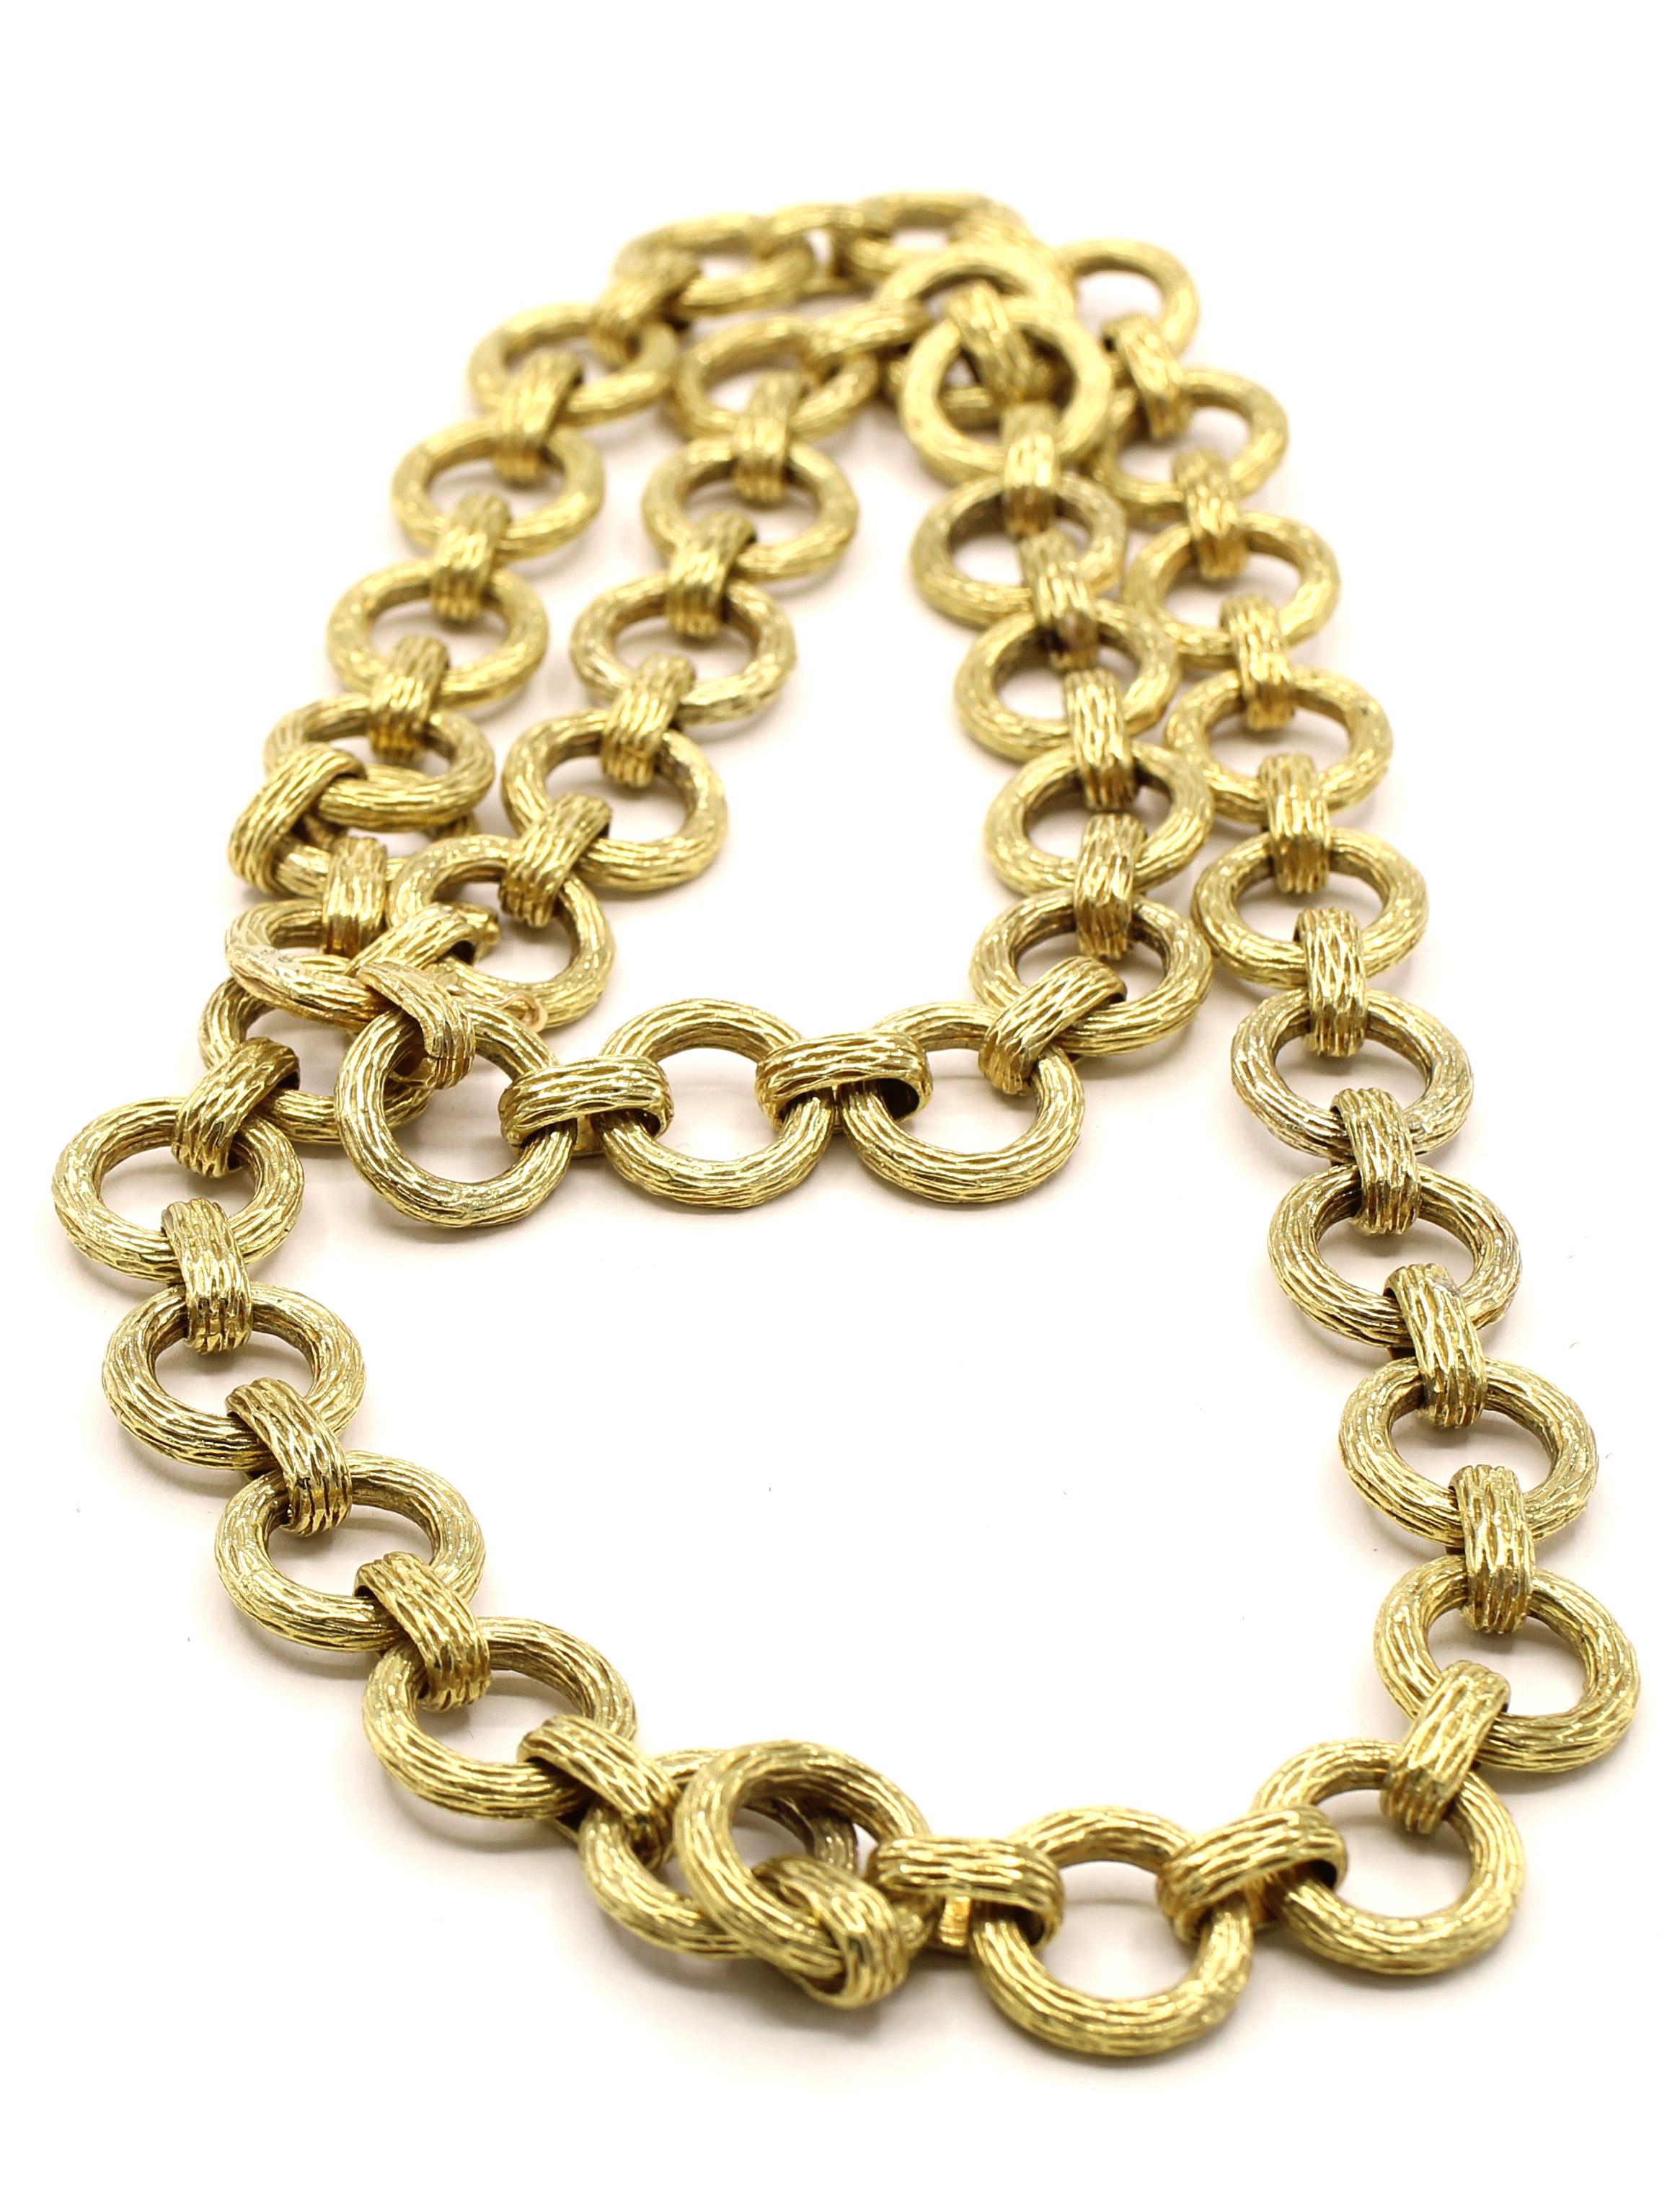 Magnifiquement fabriqué à la main en or jaune 18 carats, ce collier chic des années 1980 se compose de 39 éléments en or massif texturés, reliés de manière flexible à des maillons ovales texturés. Le collier mesure 26,5 pouces de long. La tenue